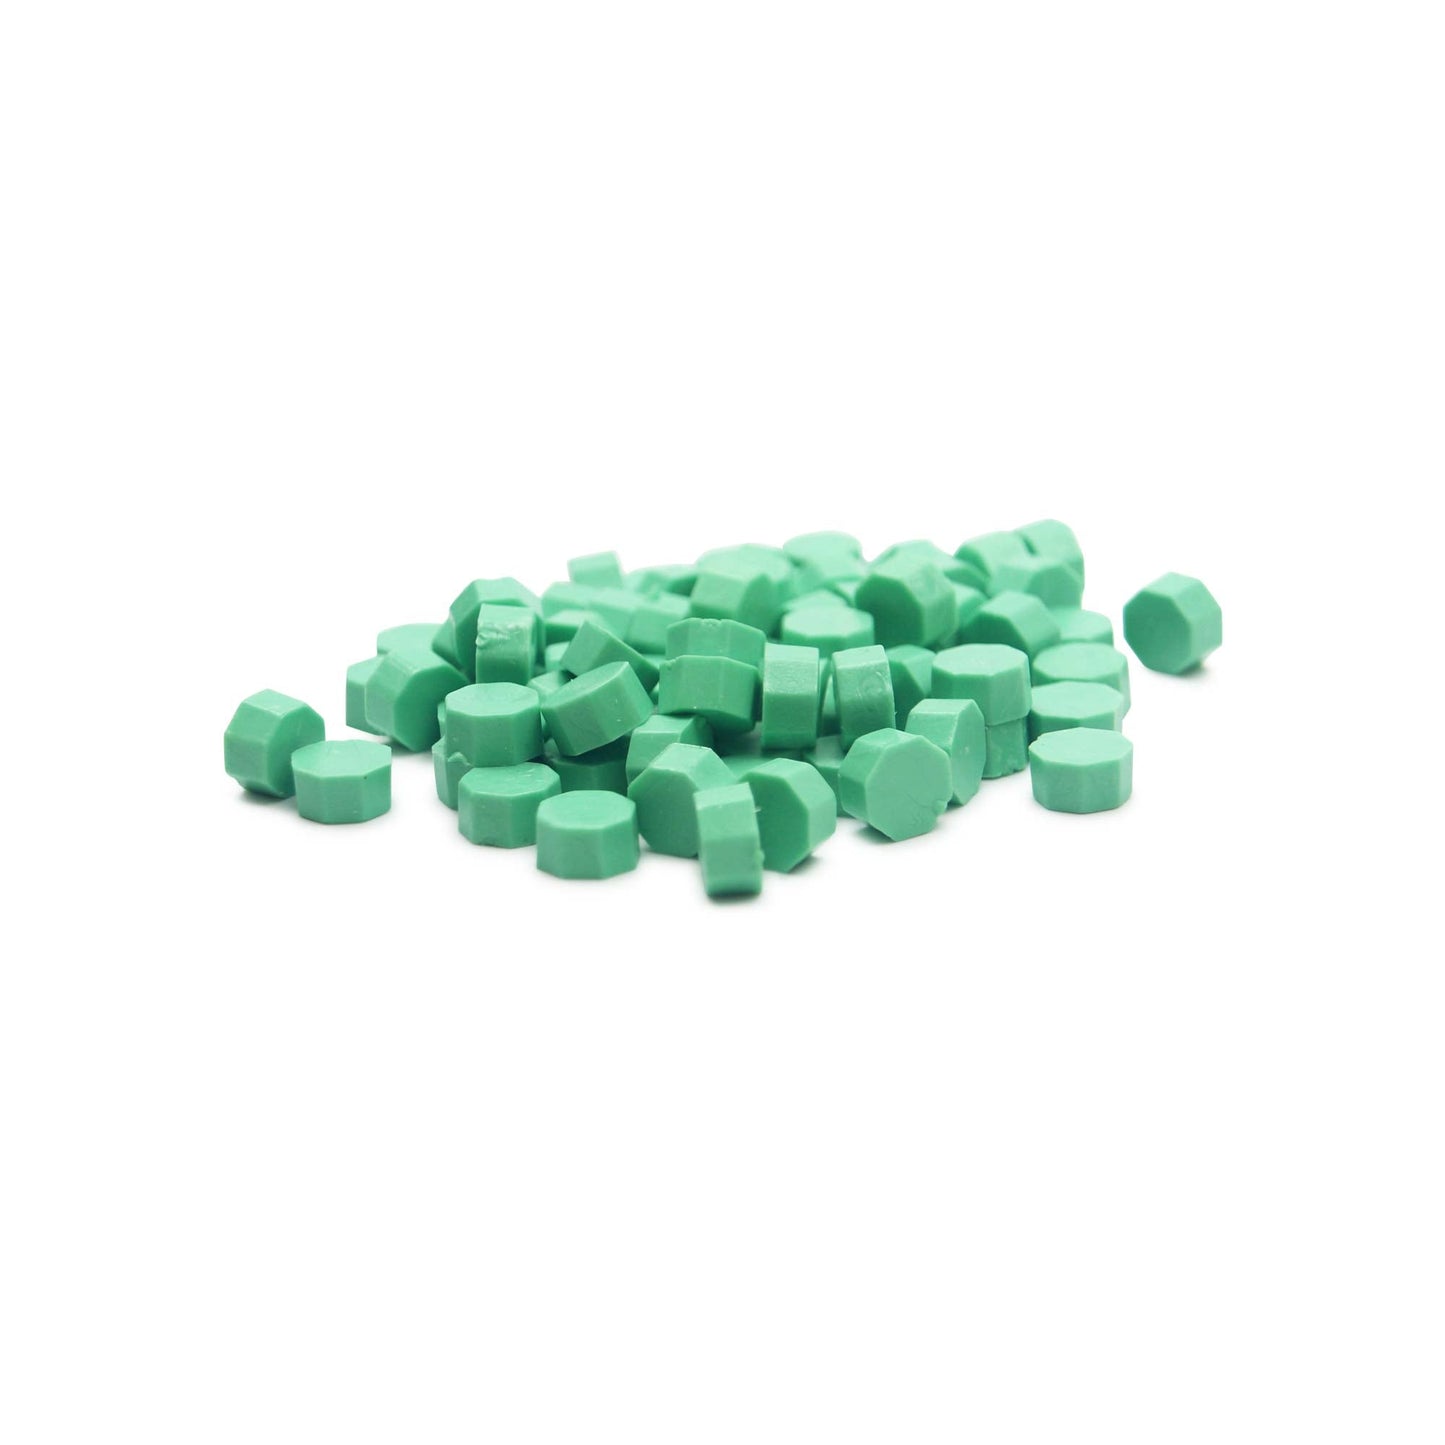 New Fern Green Wax Beads Bulk